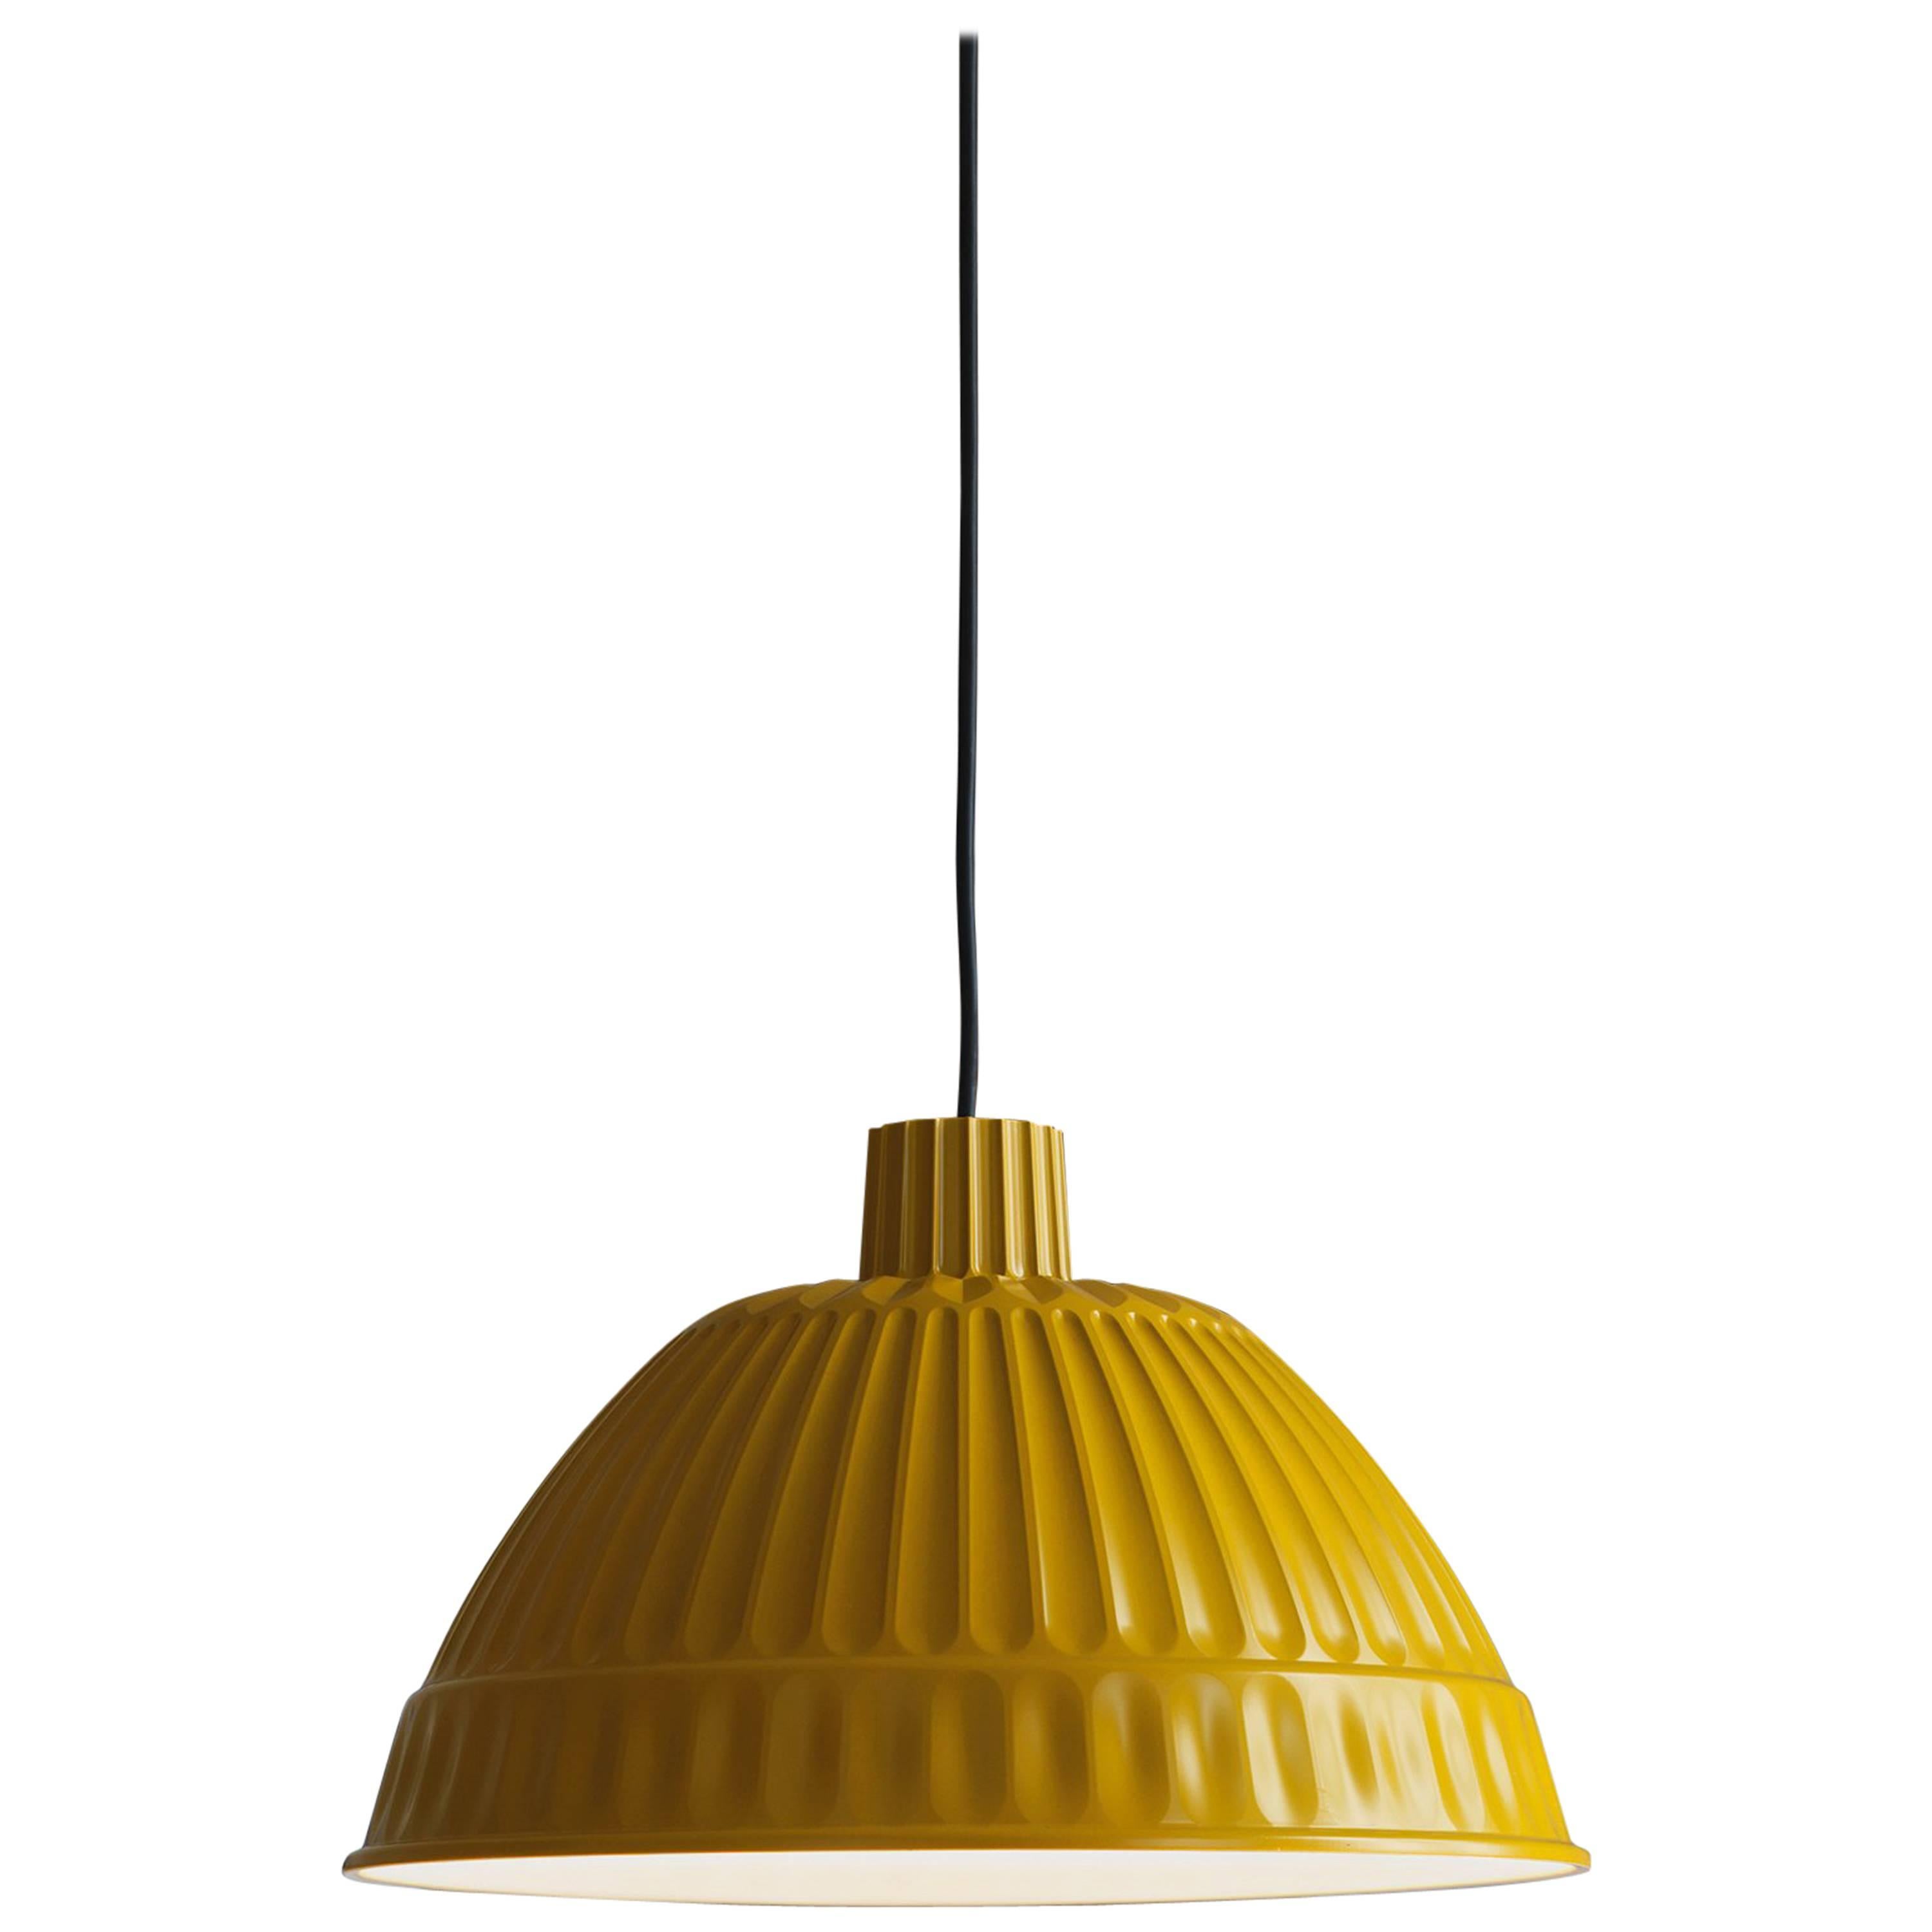 Fontana Arte Cloche Suspension Lamp in Plastic Polymer, 2014 Edition